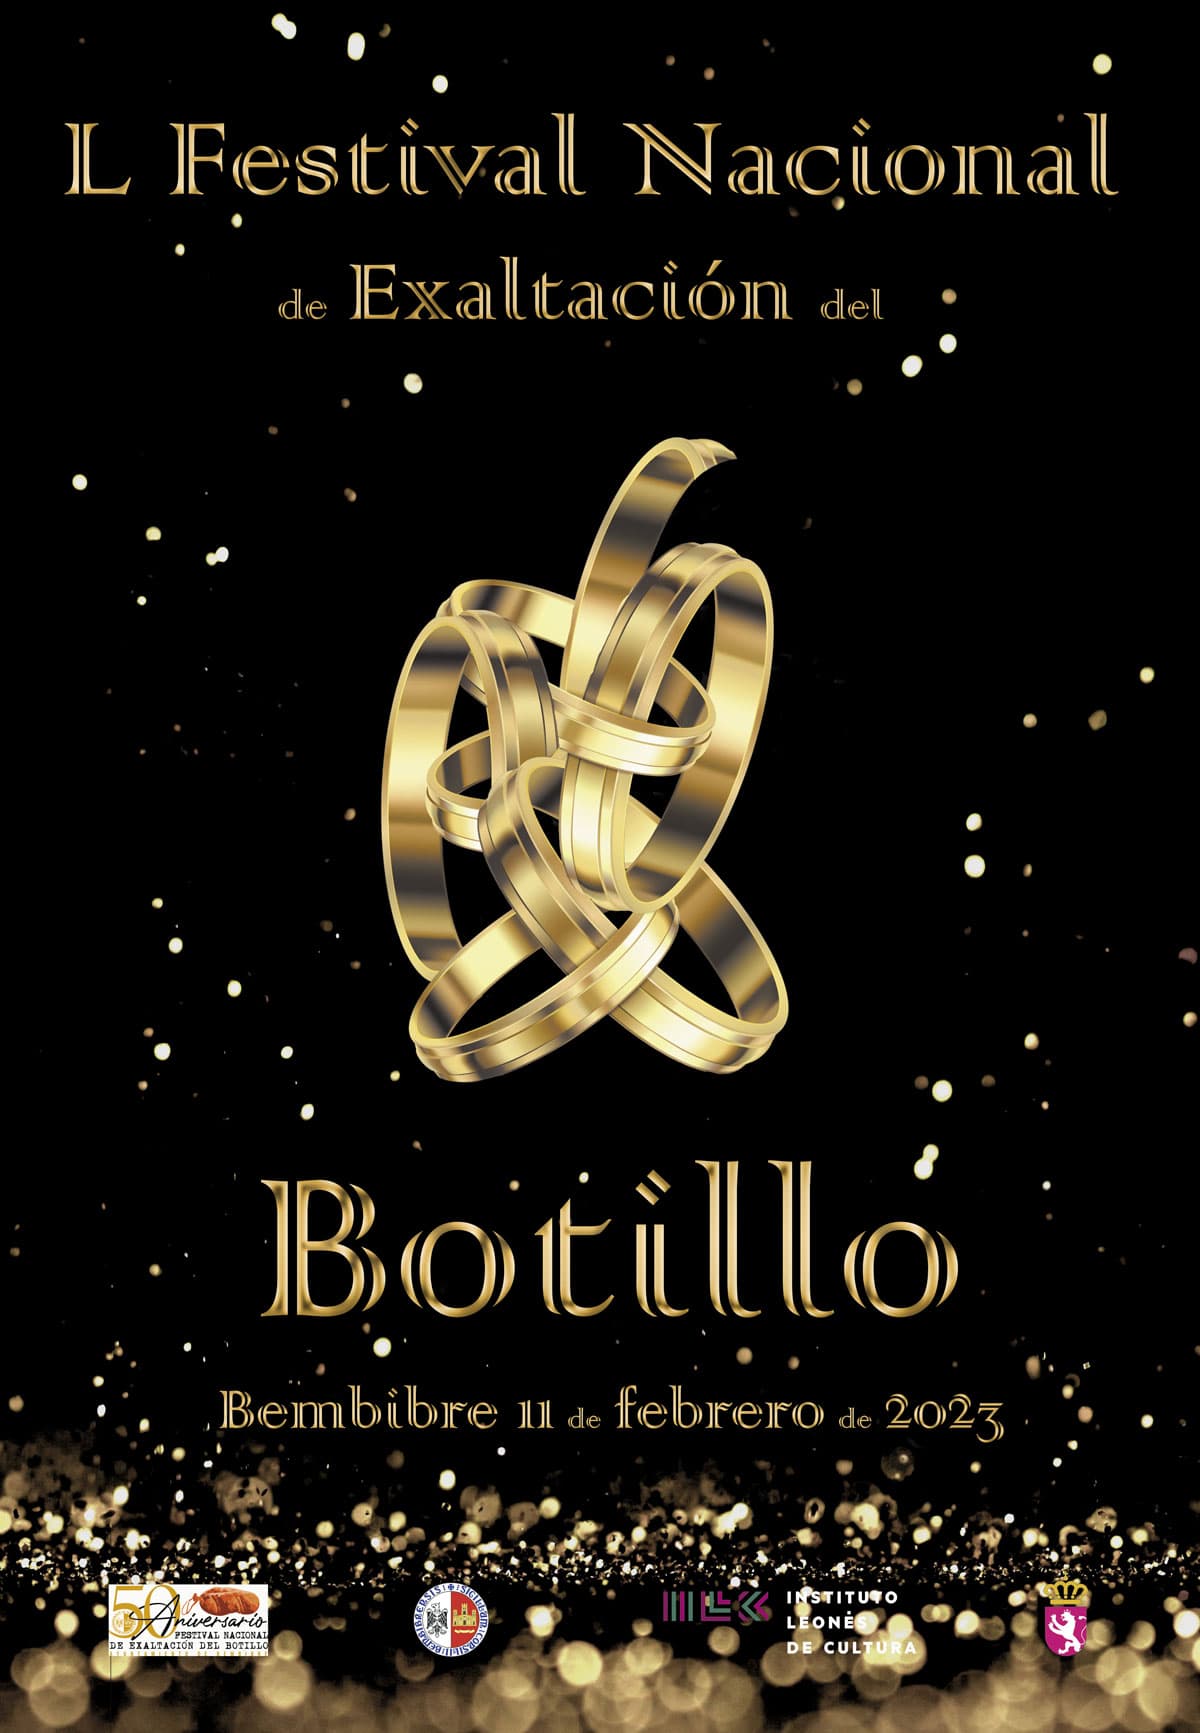 Cartel del L Festival Nacional de Exaltación del Botillo, de Susana Gomes